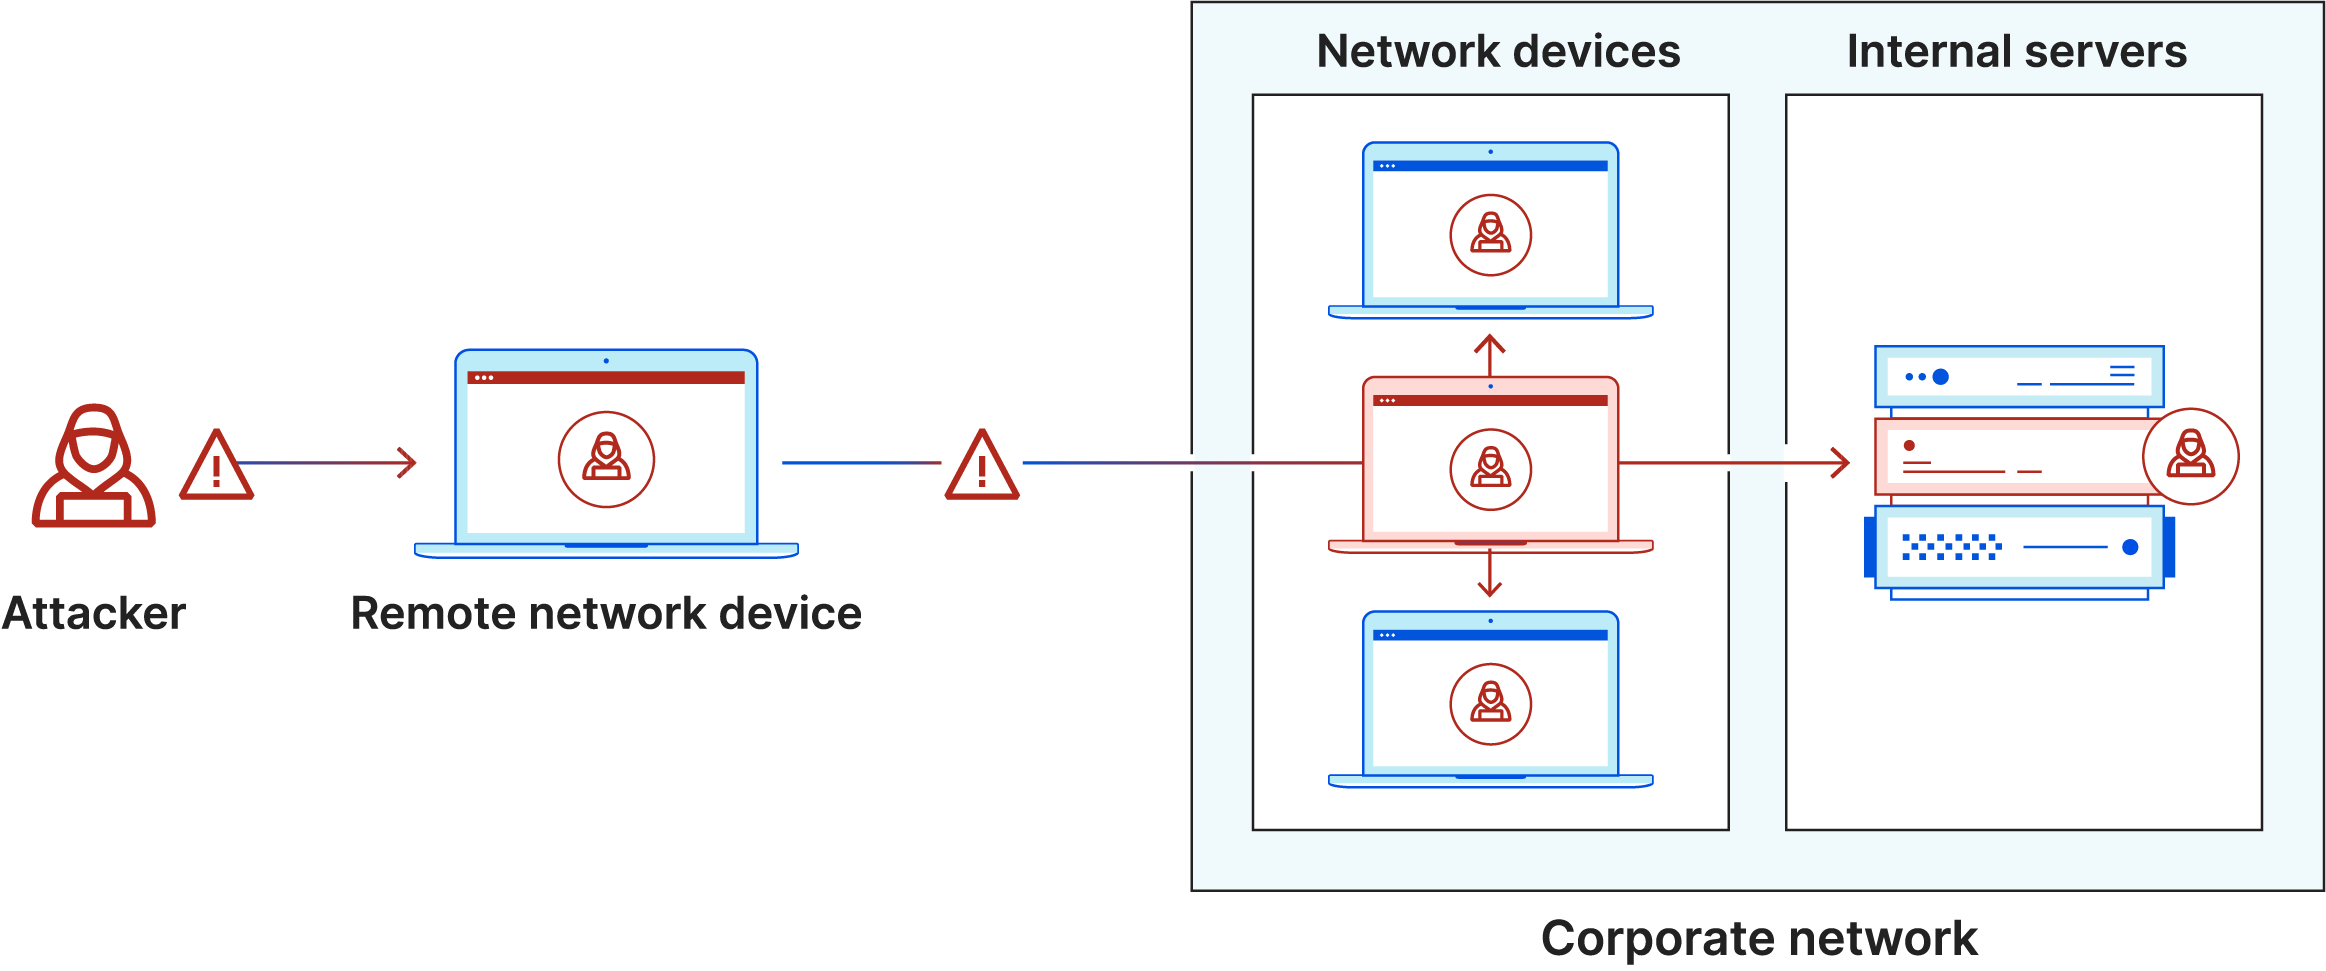 Diagramme du mouvement latéral. L'attaquant infecte l'ordinateur portable, entre dans le réseau sécurisé, se déplace latéralement vers d'autres ordinateurs et serveurs.